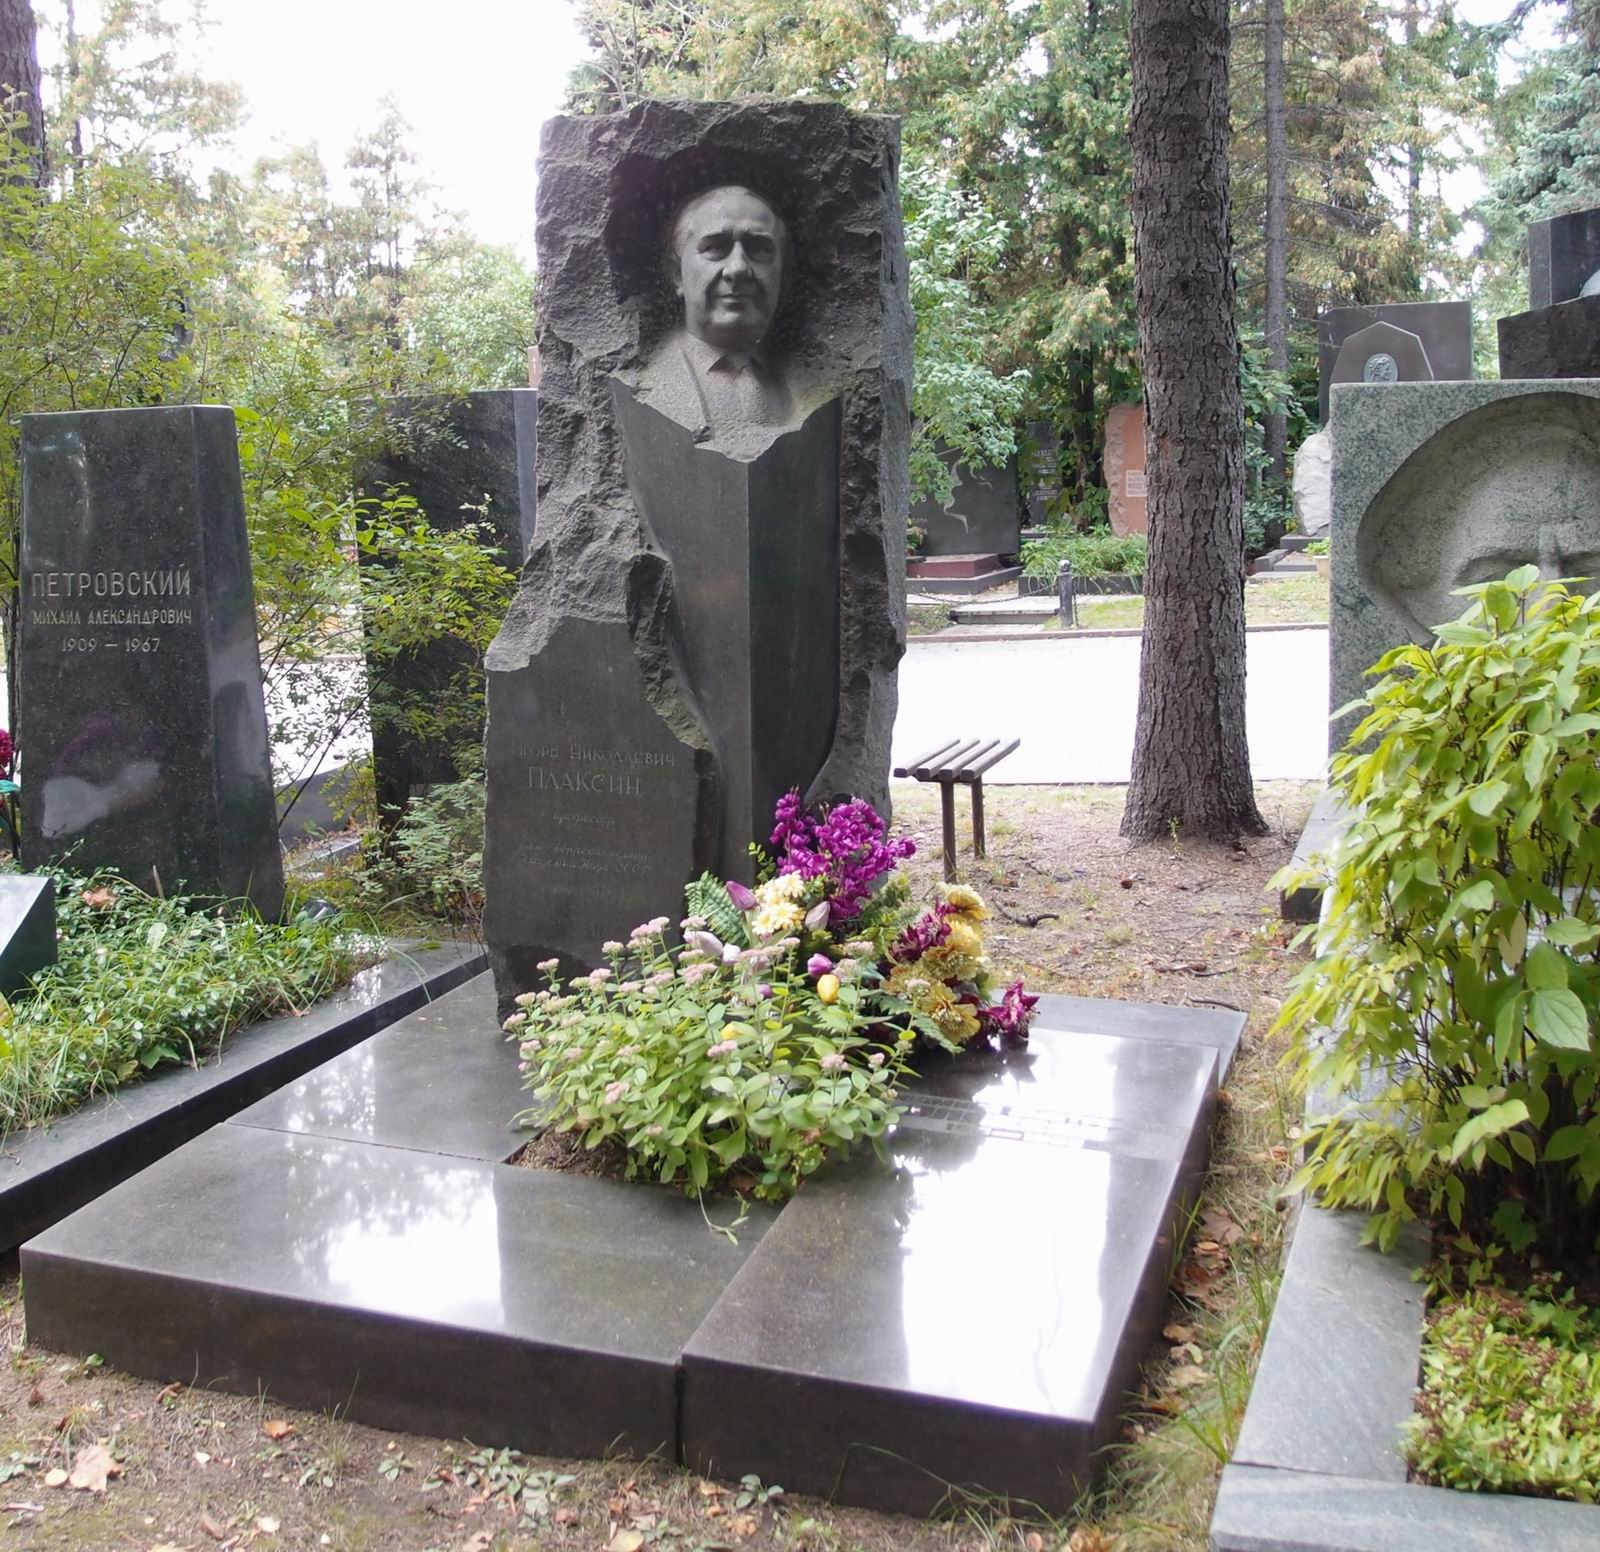 Памятник на могиле Плаксинa И.Н. (1900–1967), ск. А.Елецкий, на Новодевичьем кладбище (6–39–3). Нажмите левую кнопку мыши чтобы увидеть фрагмент памятника.